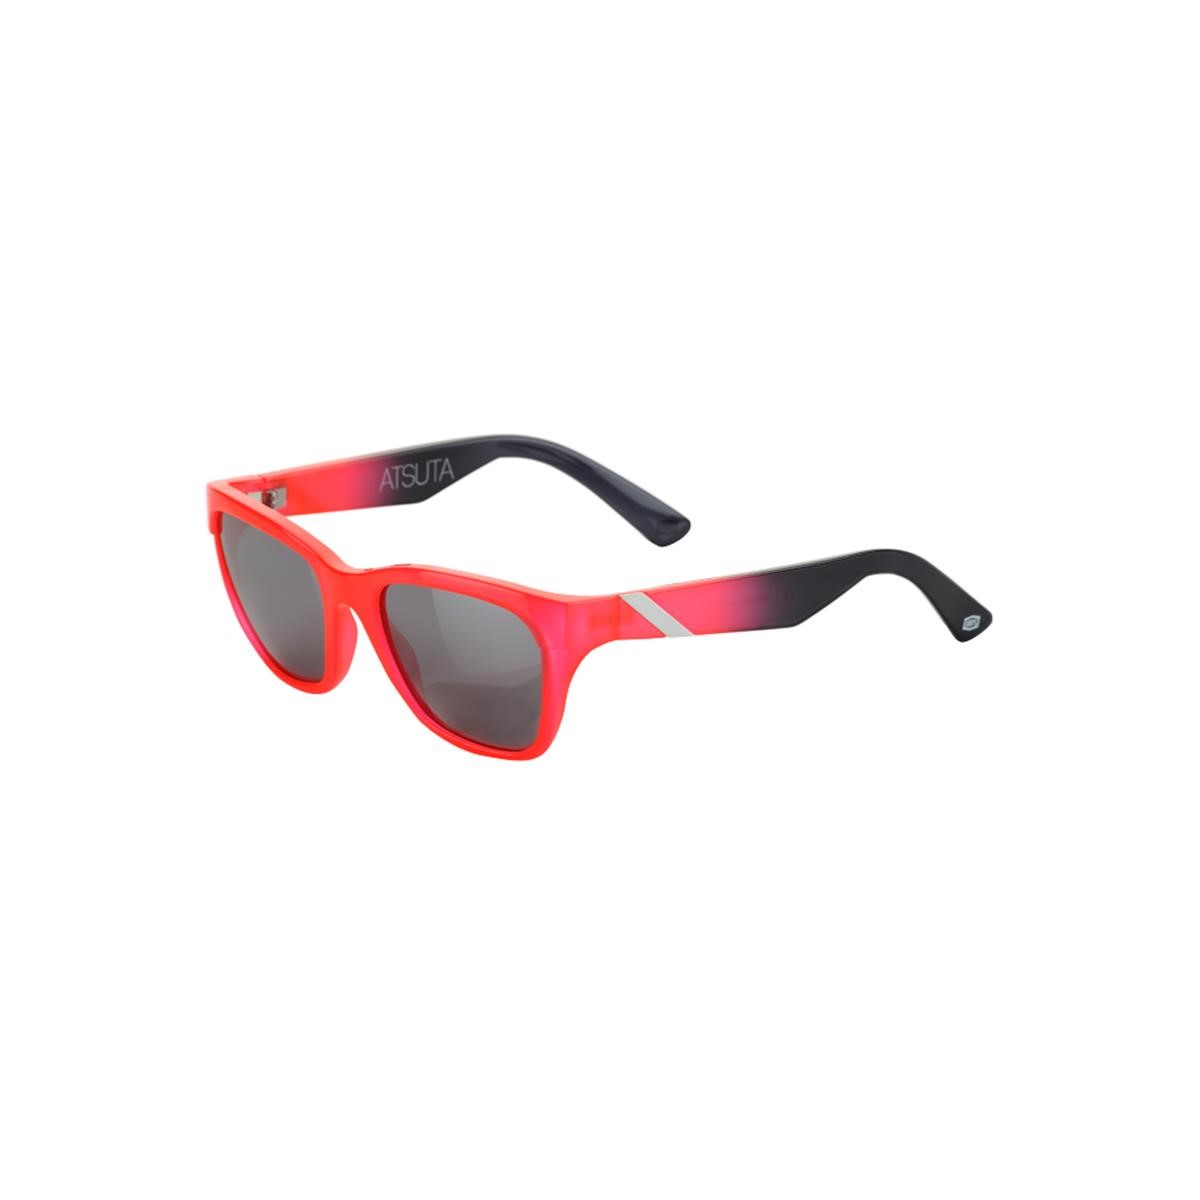 100% Sunglasses The Atsuta Neon Red/Black - Red Mirrored